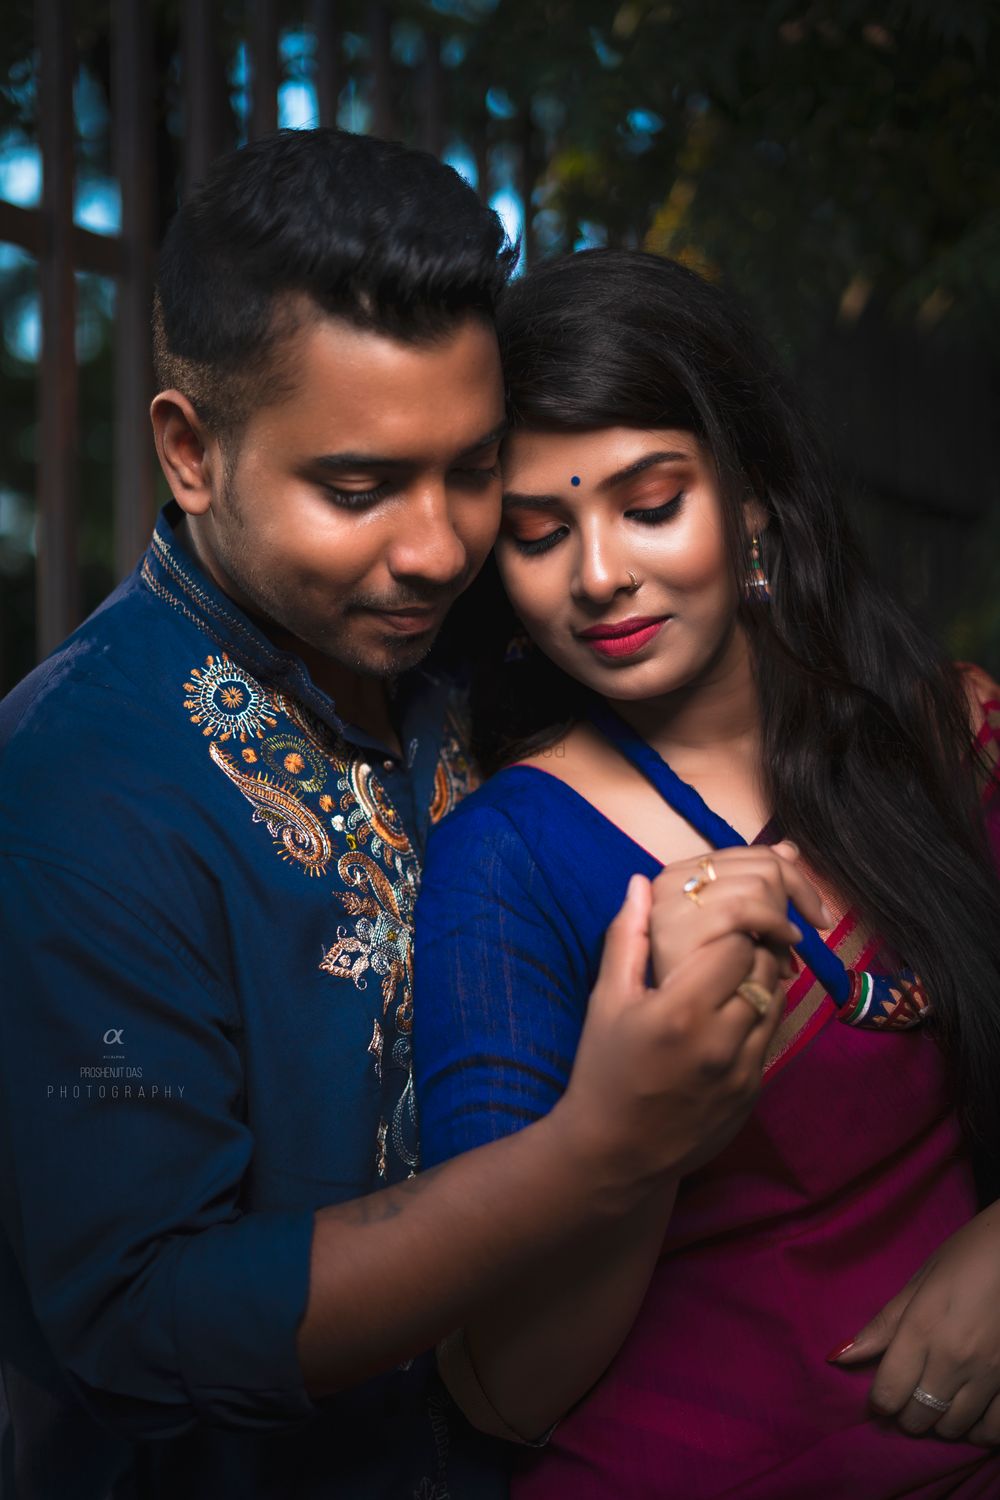 Photo By Wedding Thoughts Proshenjit Das Photography - Photographers